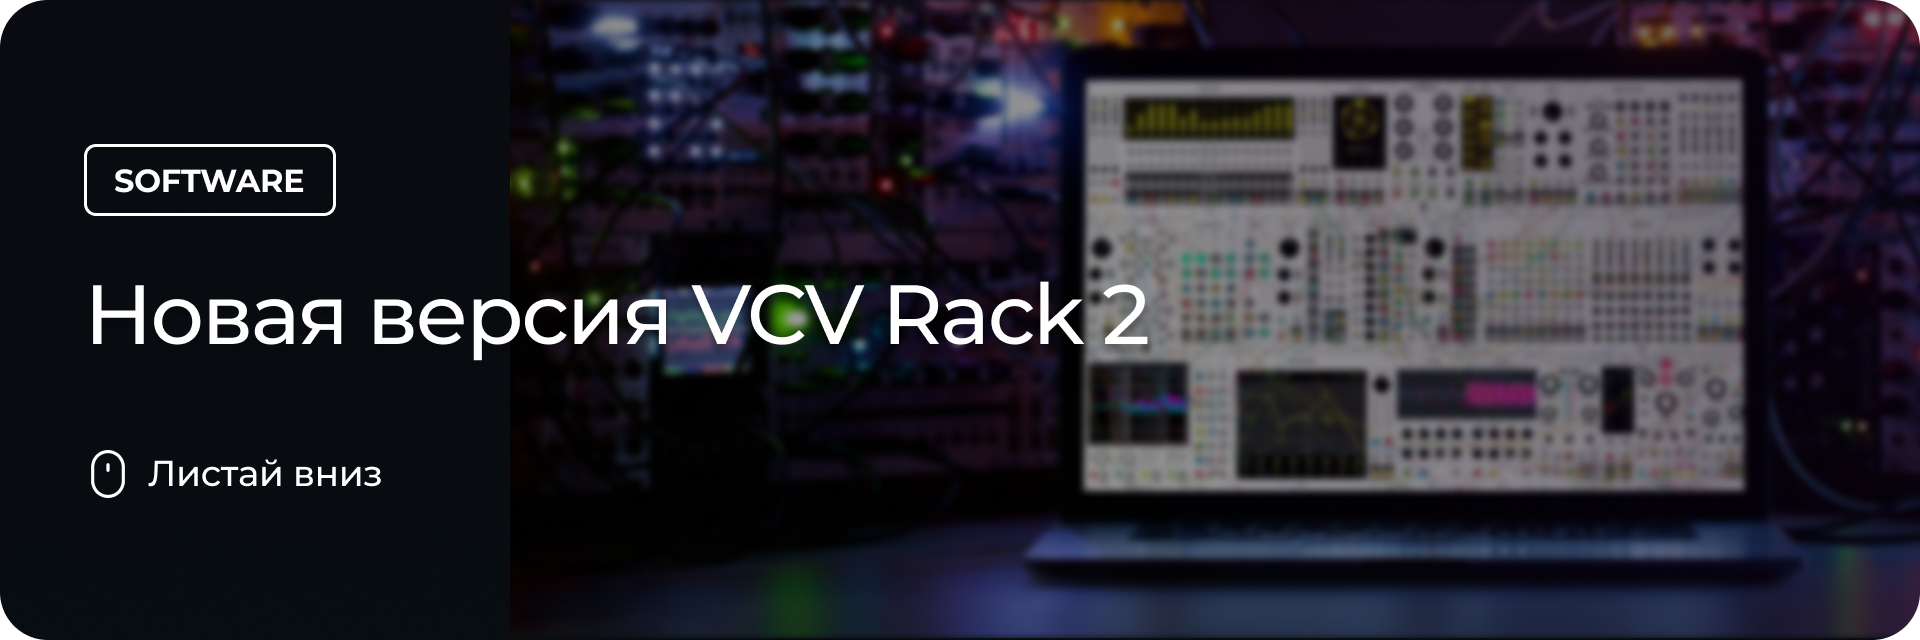 Новая версия VCV Rack 2